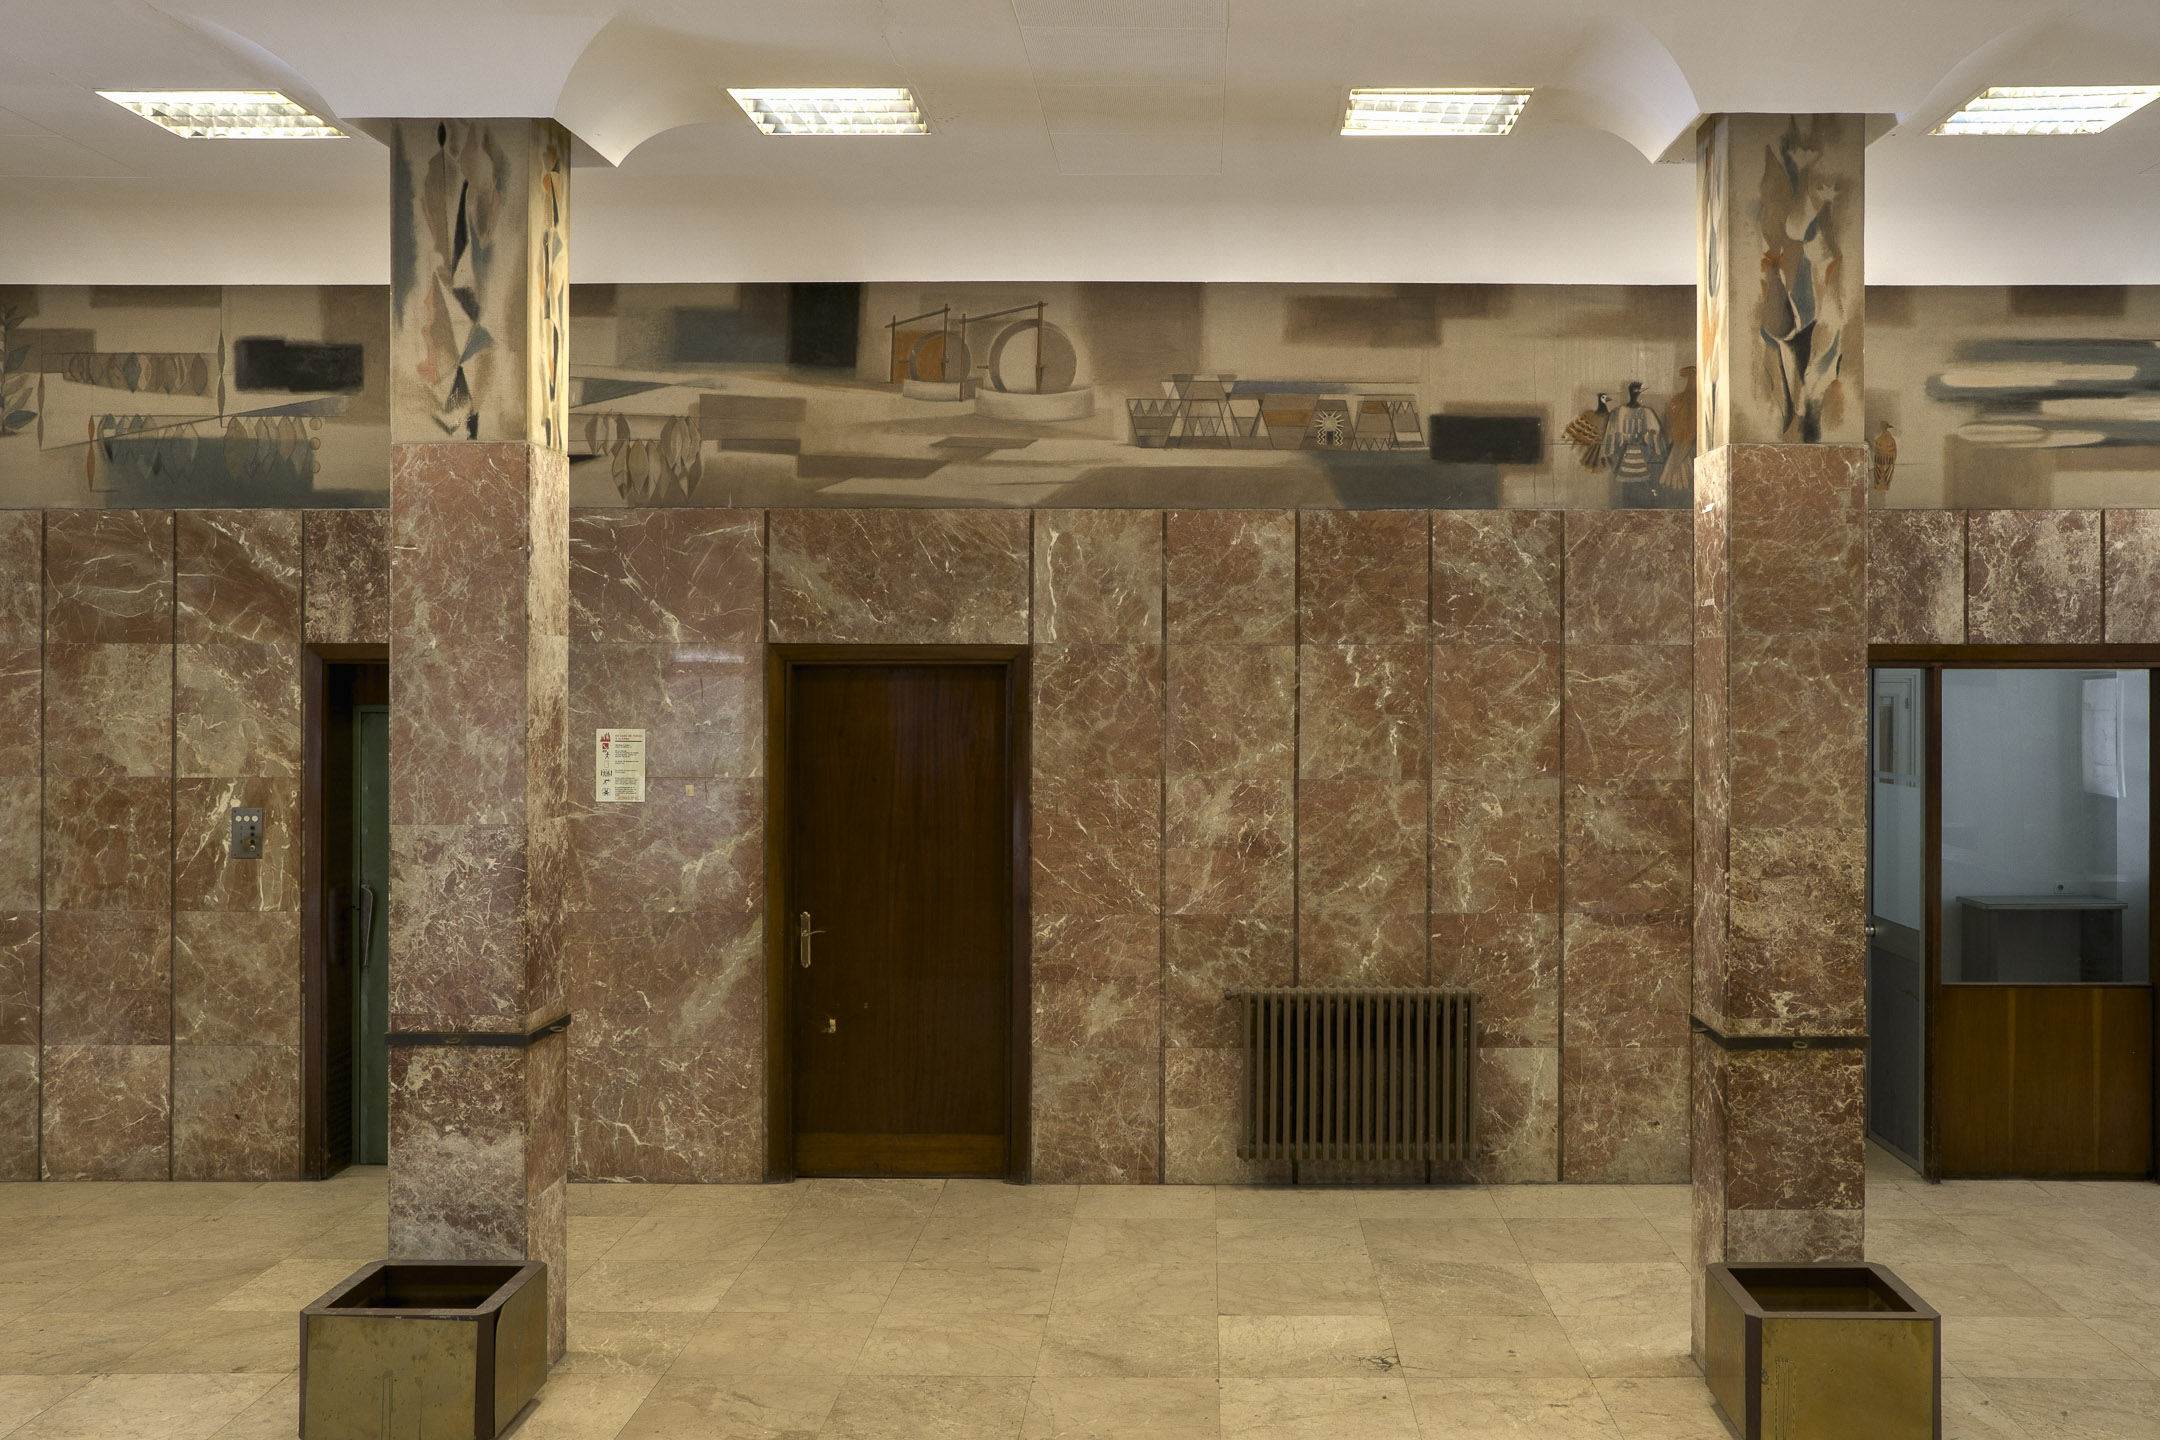 3 Detalle del friso Amrica del vestbulo del Edifico de Oficinas de la antigua Fbrica de Tabacos de Altadis en Sevilla 2020 Archivo de la Autora